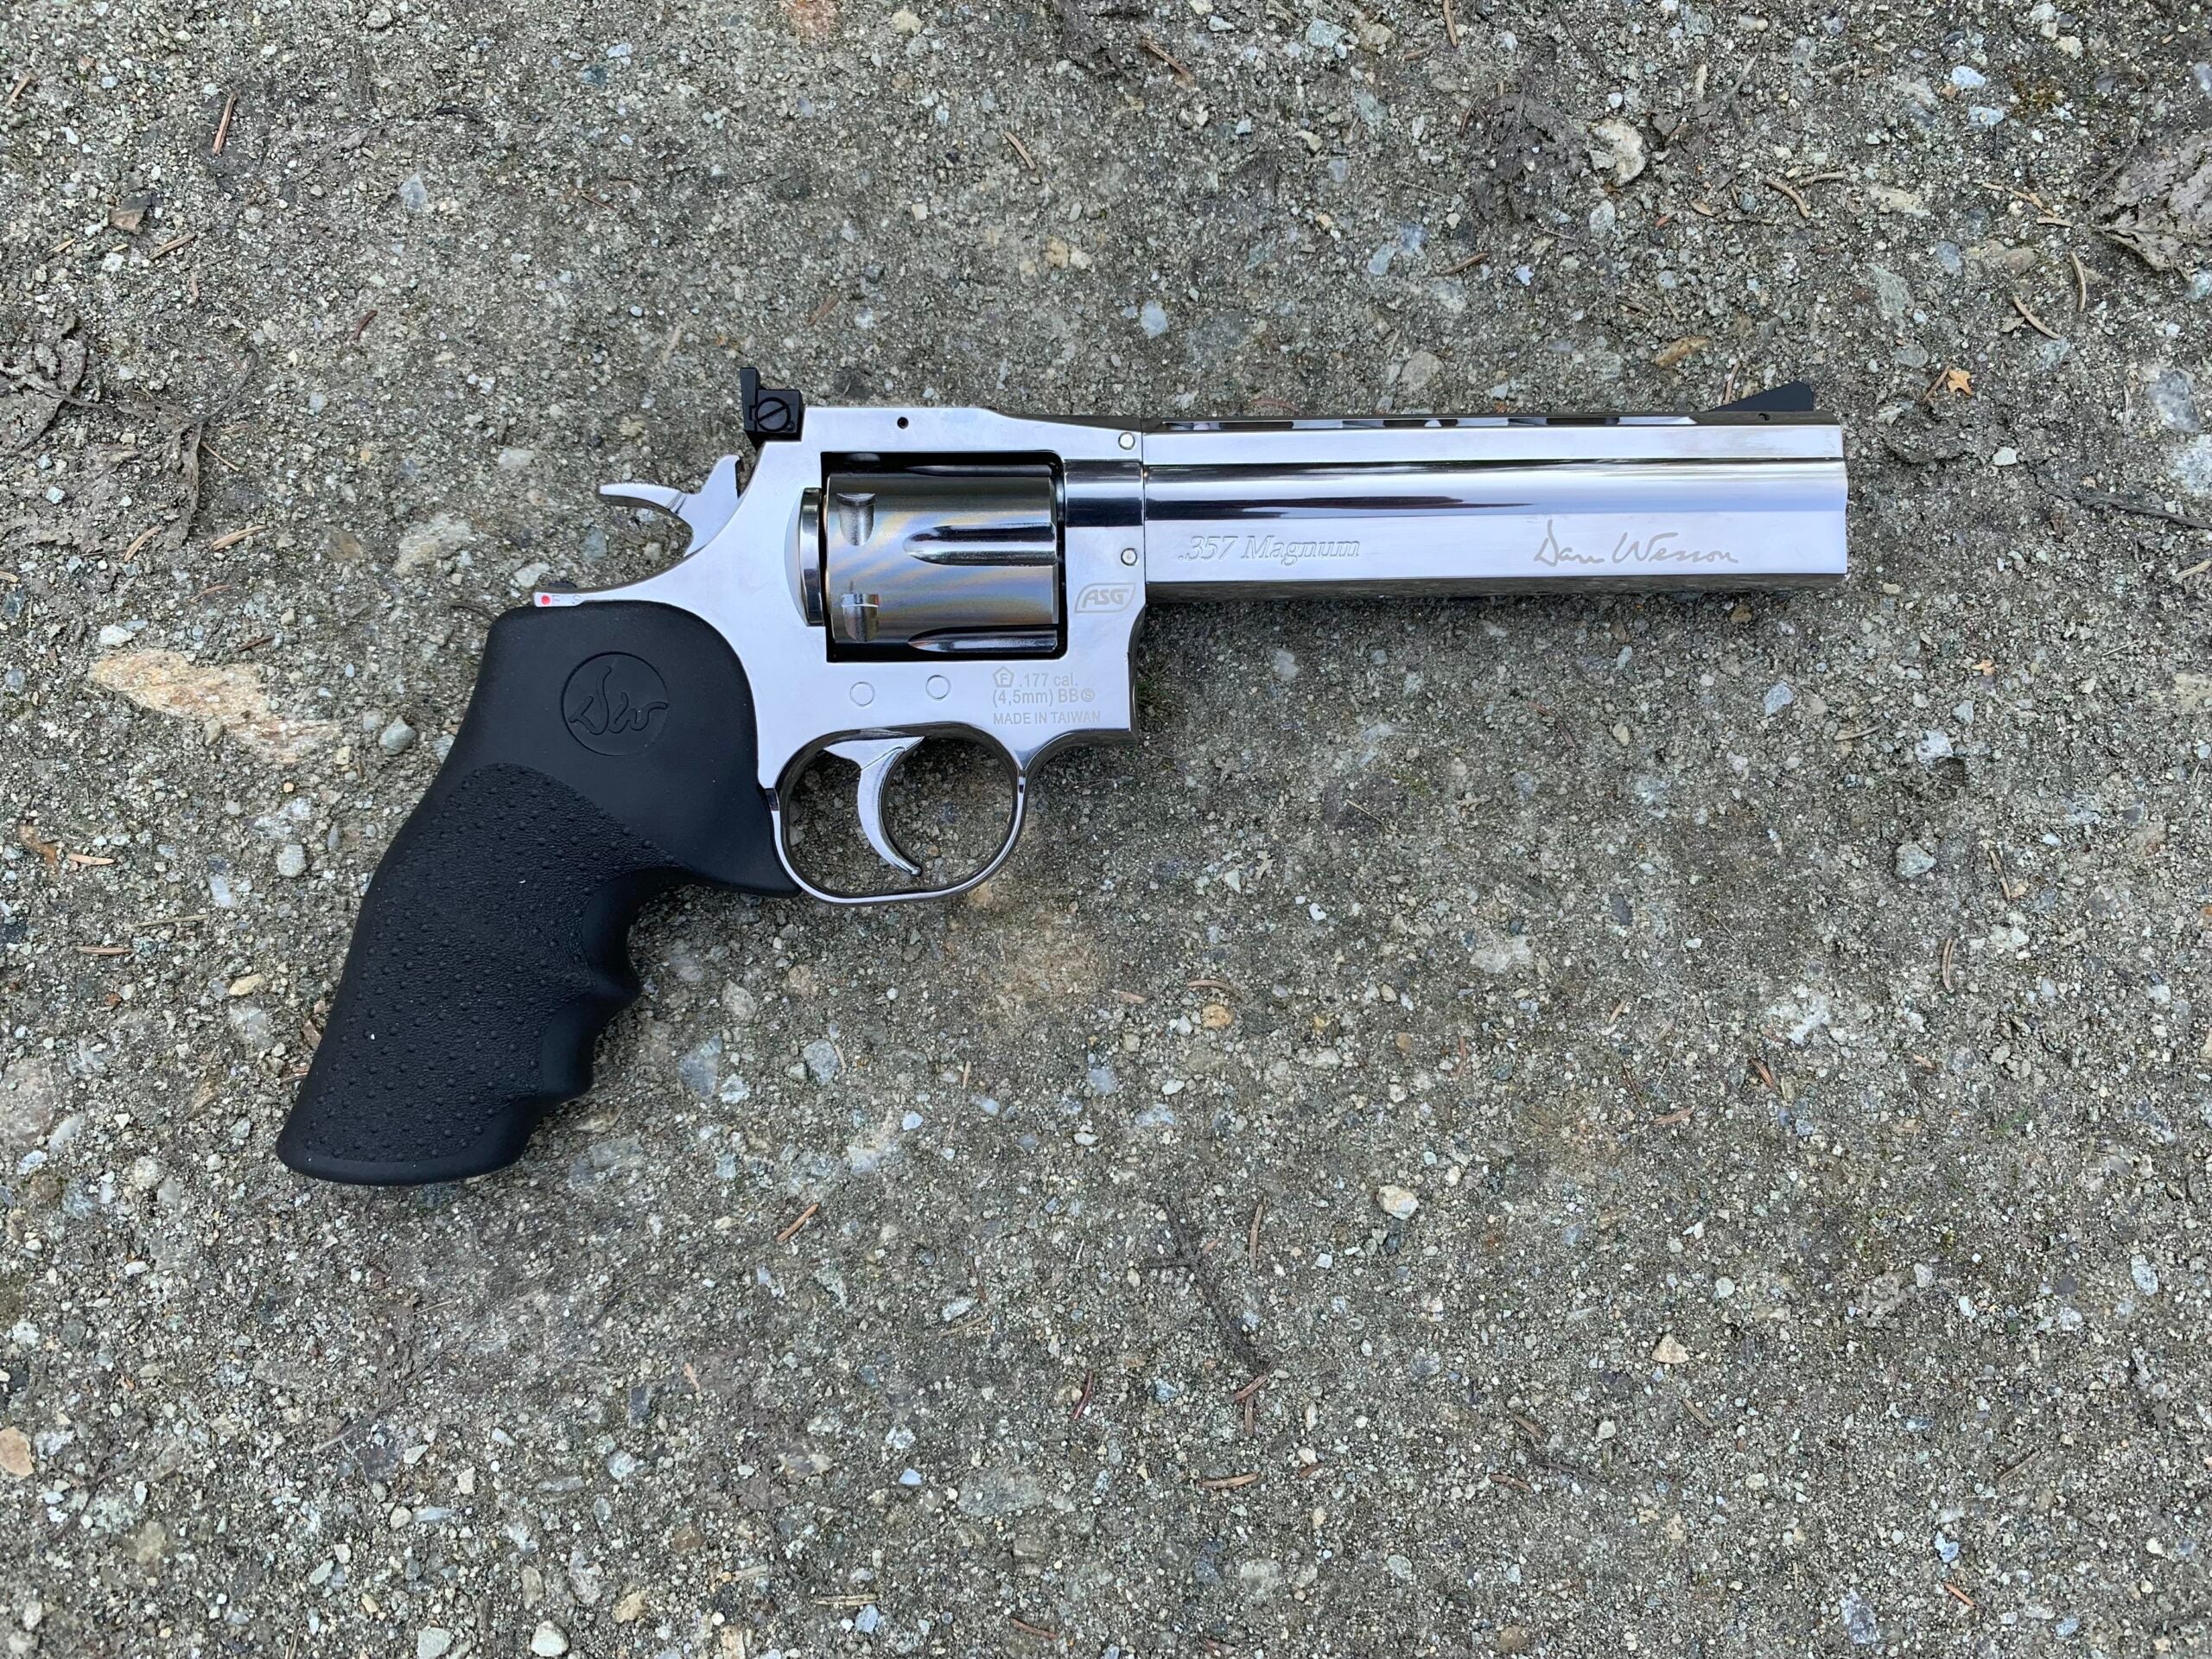 The Dan Wesson 715 bb gun revolver